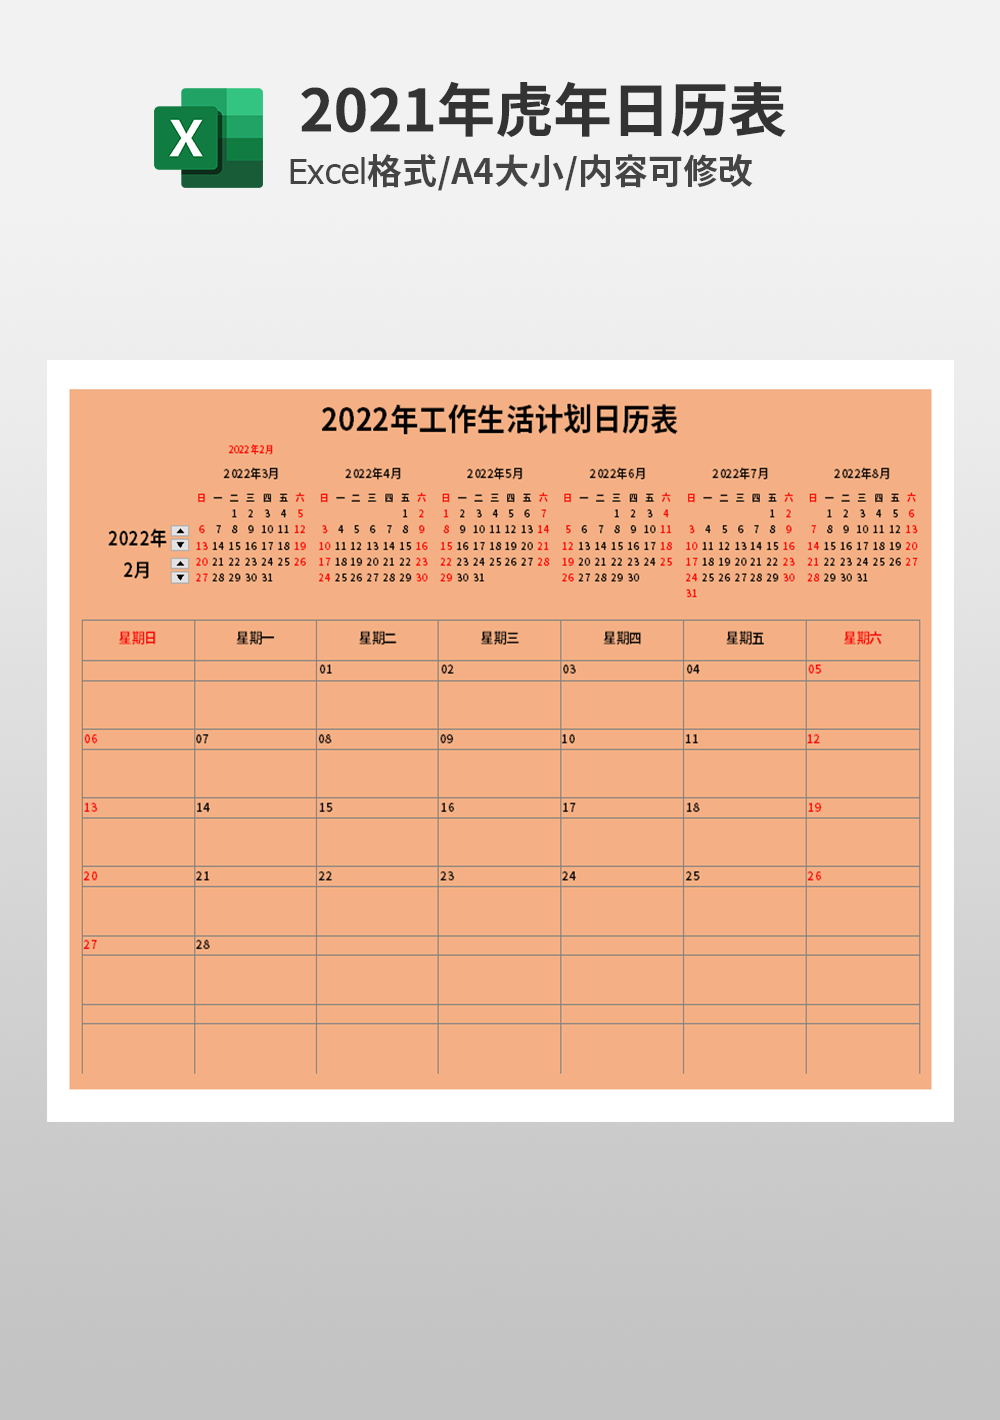 2022年工作生活计划日历表